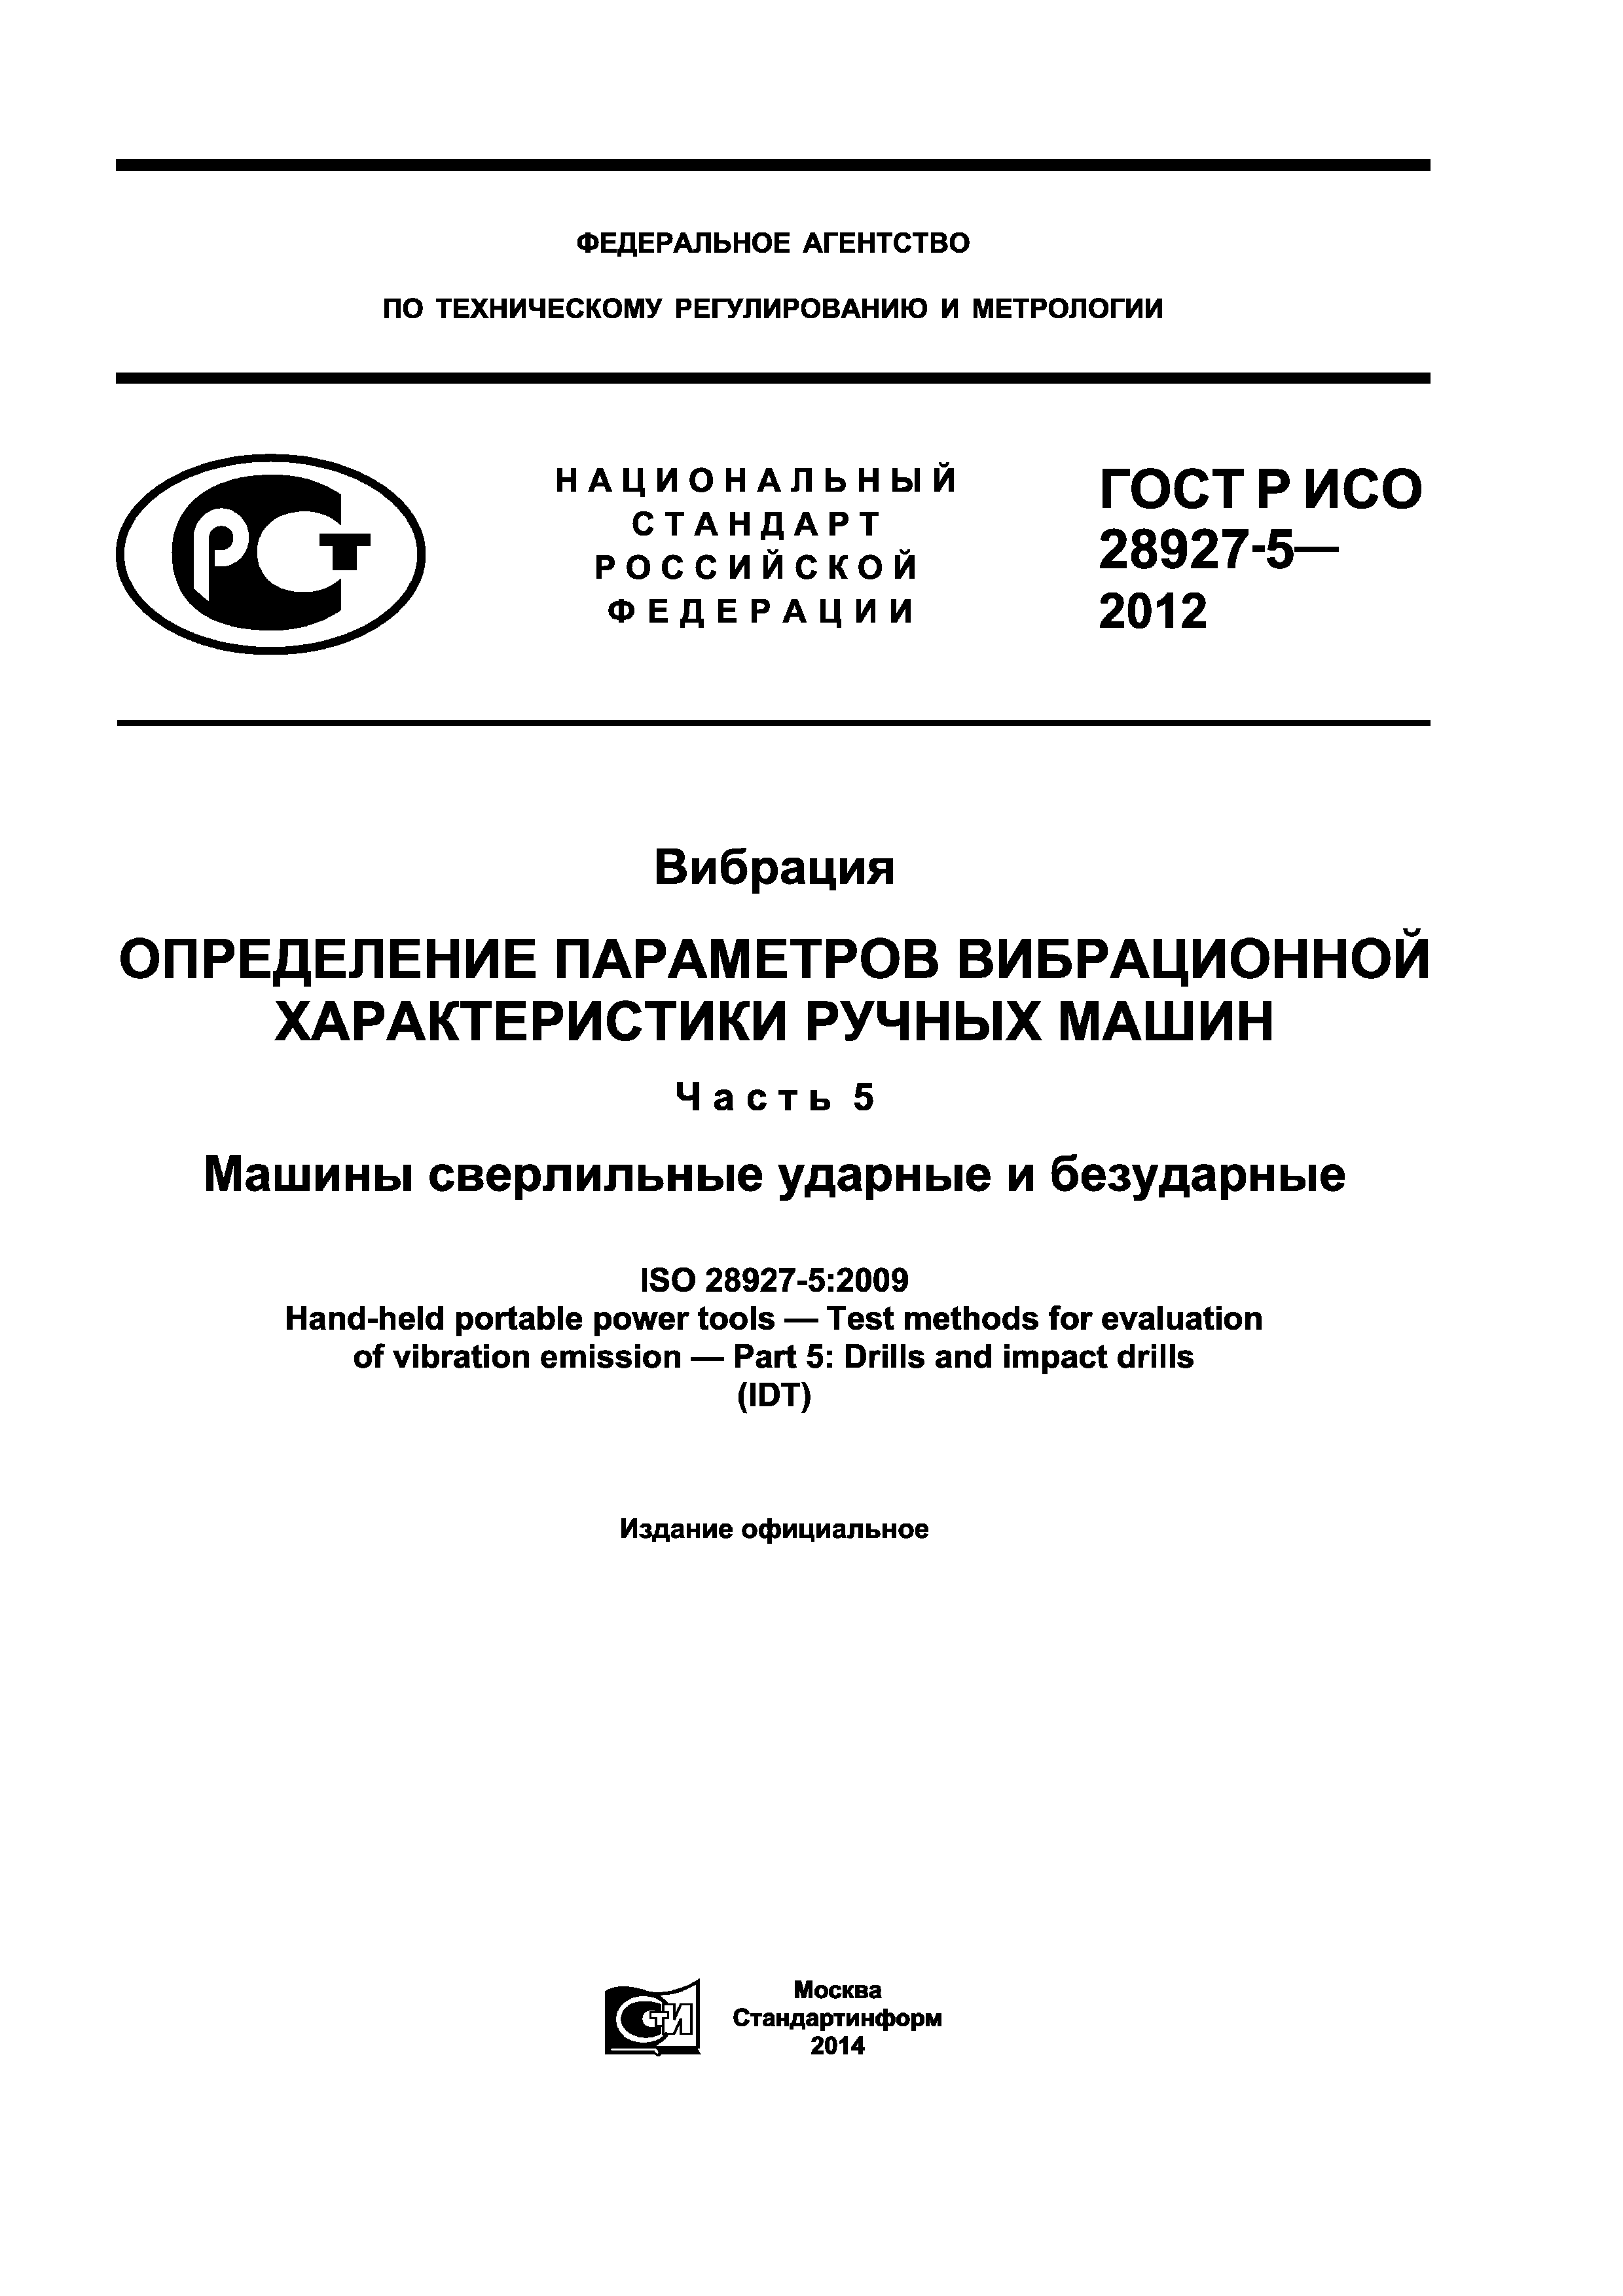 ГОСТ Р ИСО 28927-5-2012